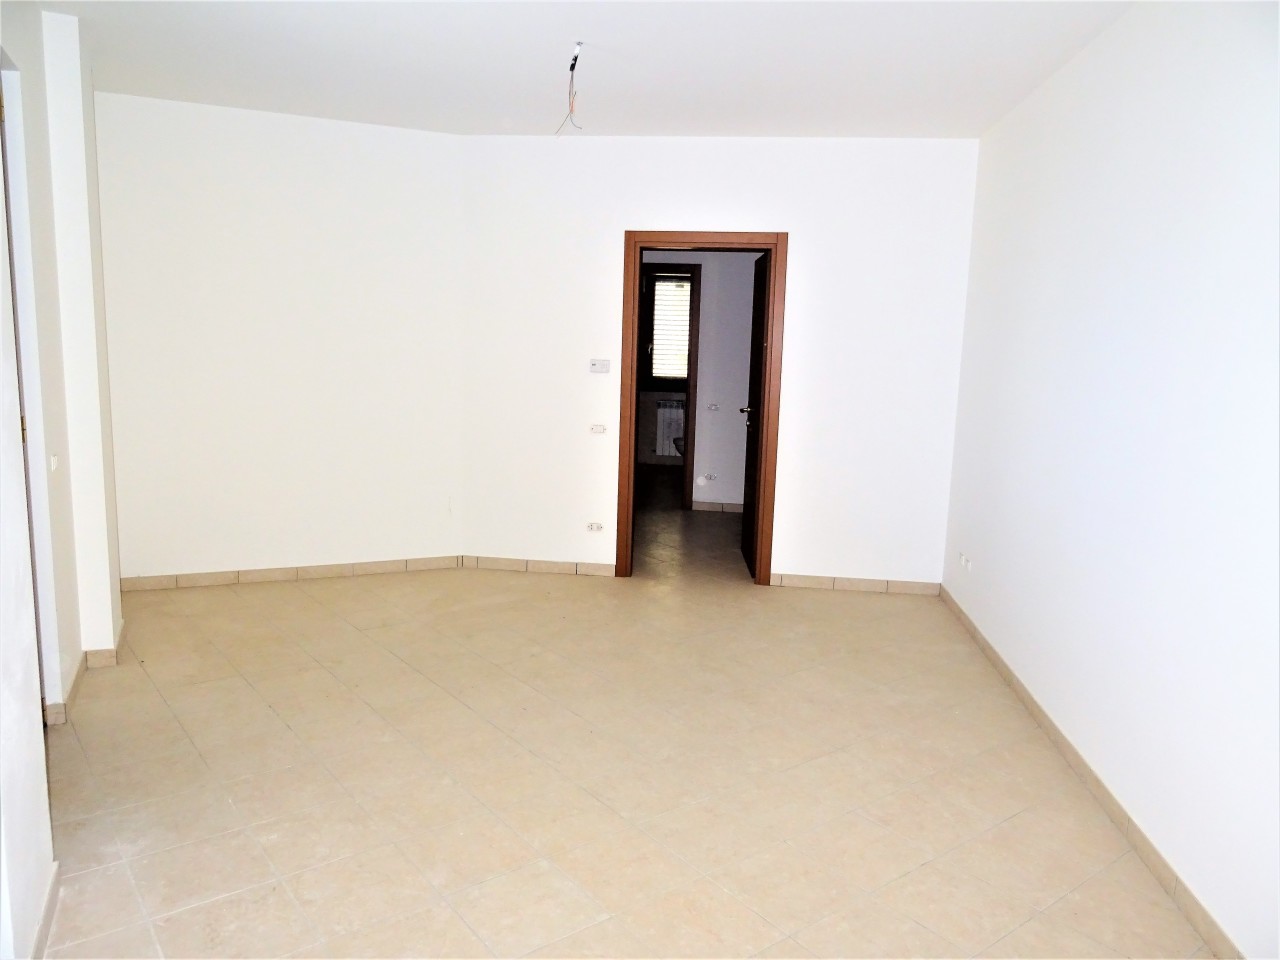 Appartamento in vendita a Ostra Vetere, 4 locali, prezzo € 190.000 | PortaleAgenzieImmobiliari.it